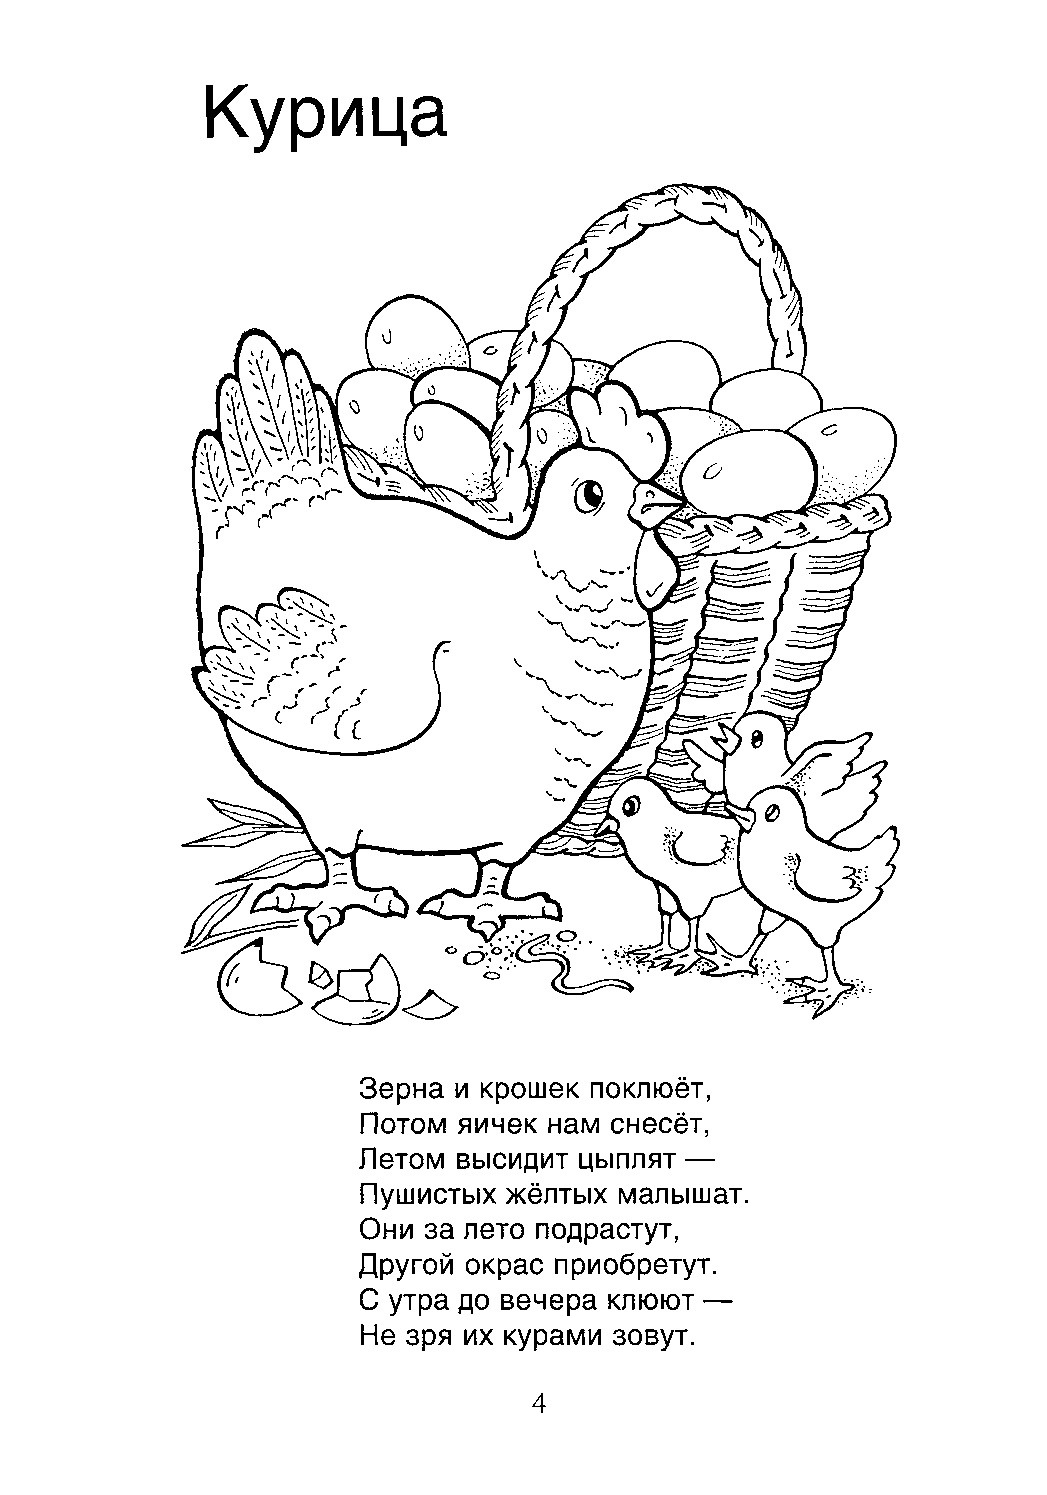 Загадка про кур. Загадки про курицу для детей 3-4 лет. Загадка про курицу. Стихотворение про кур. Загадки про животных для детей раскраски.